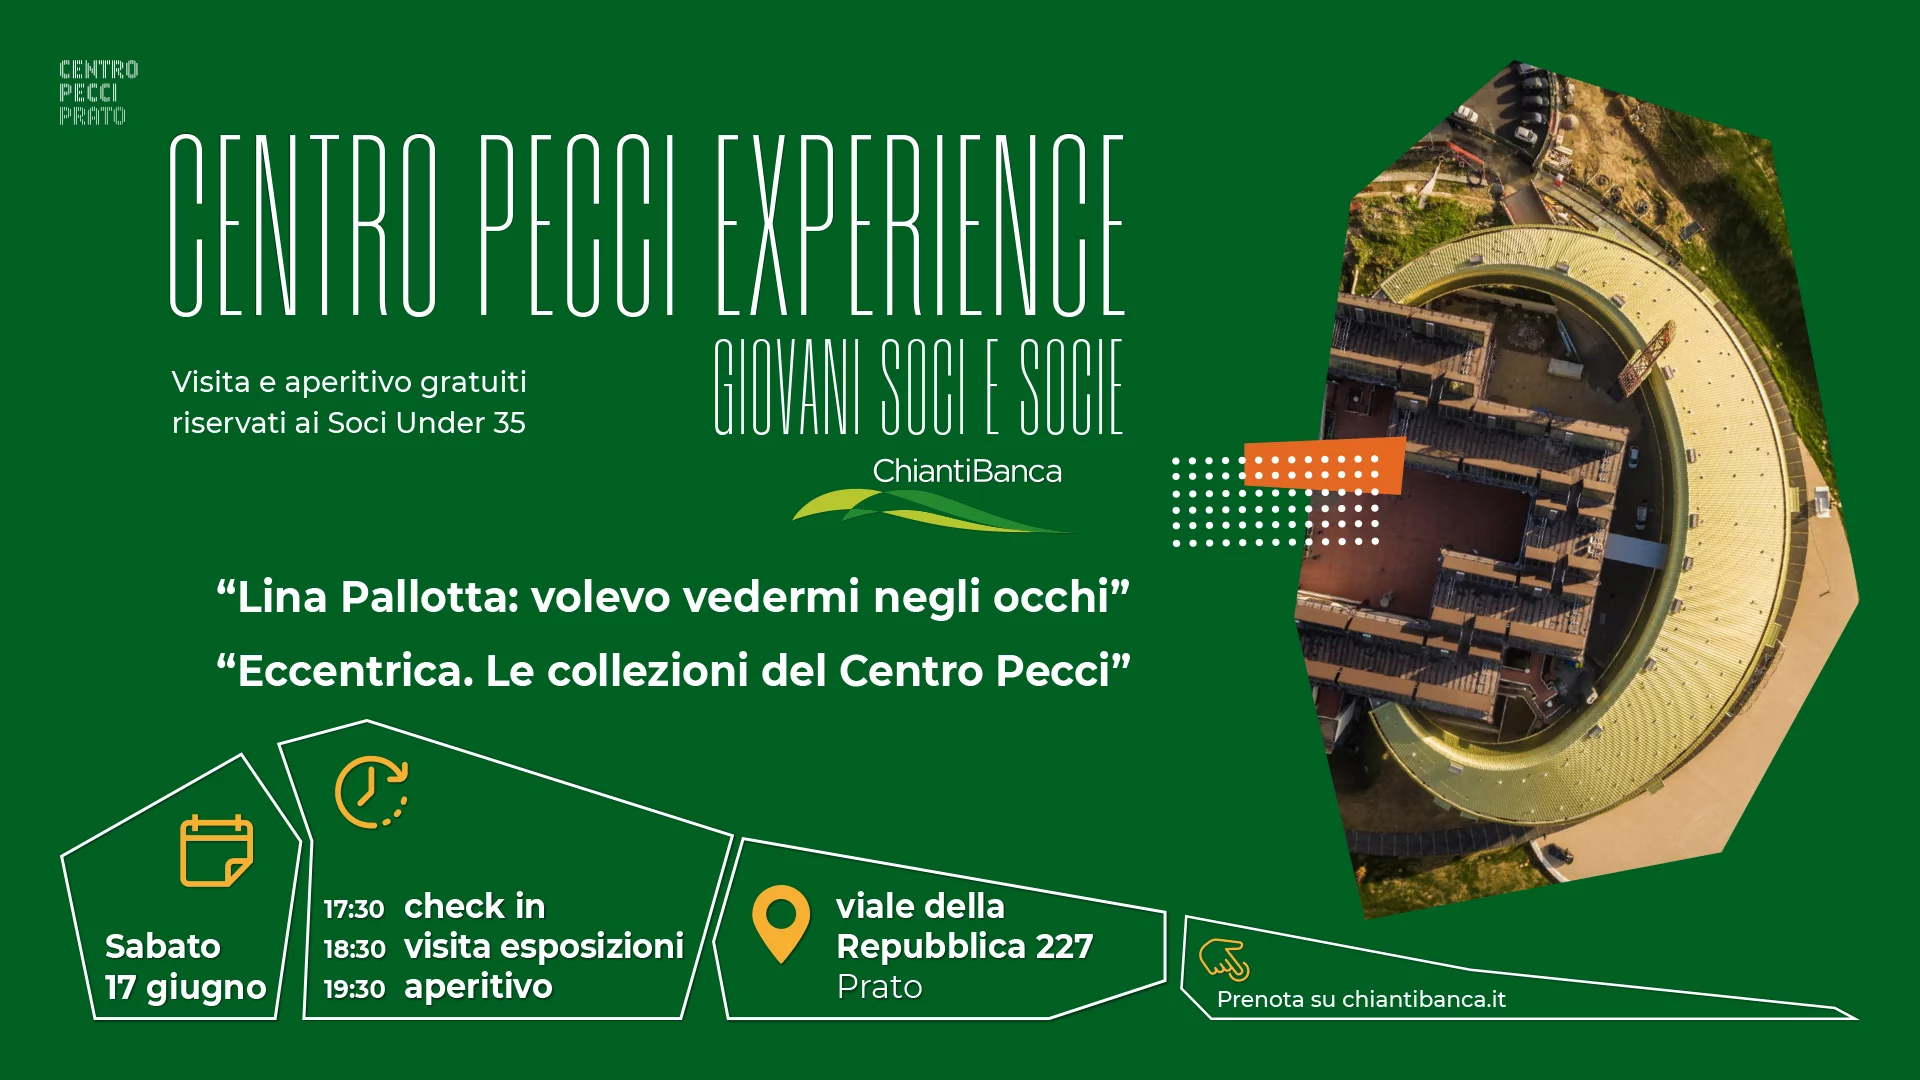 Evento Giovani Soci e Socie ChiantiBanca - 17 giugno Centro Luigi Pecci a Prato